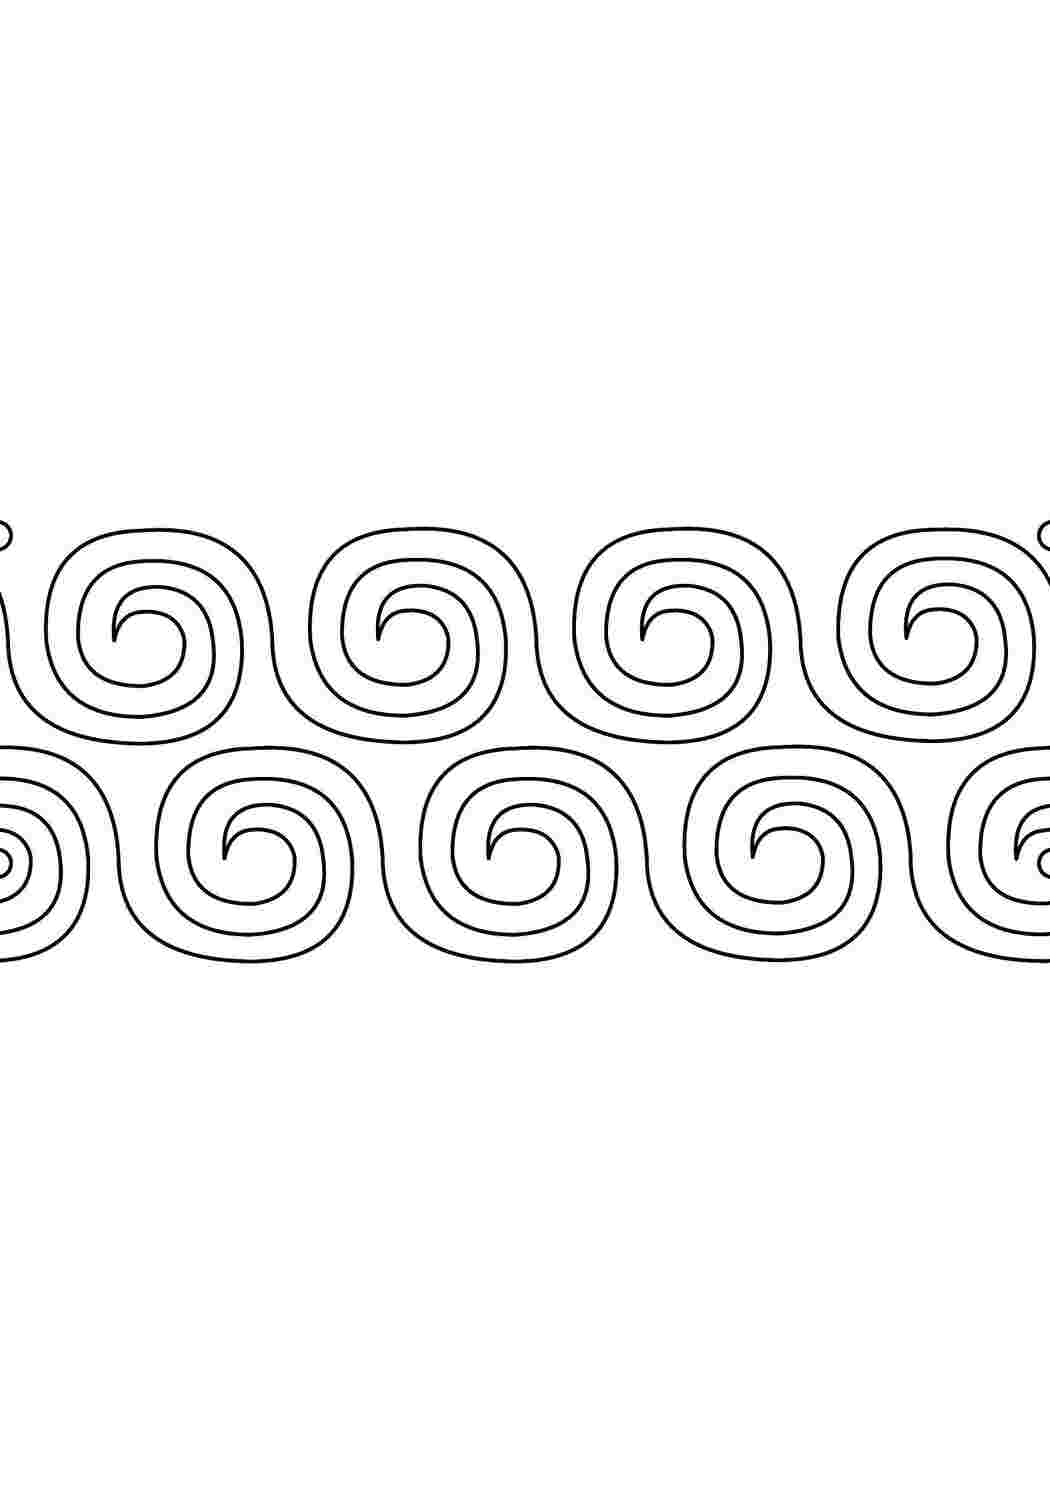 Казахстан. Казахский орнамент. Лист из 4 марок (2 тет-беша), с оформлением полей